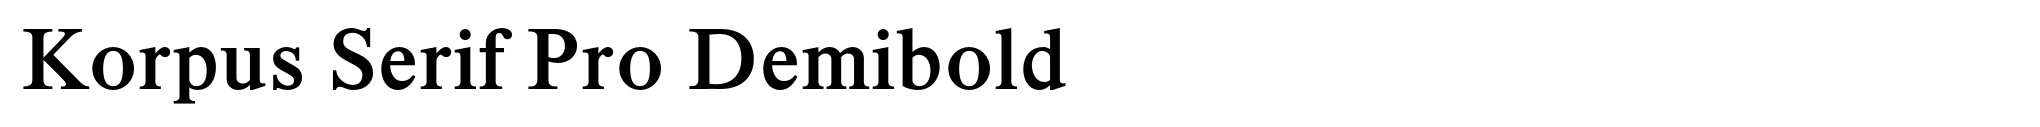 Korpus Serif Pro Demibold image